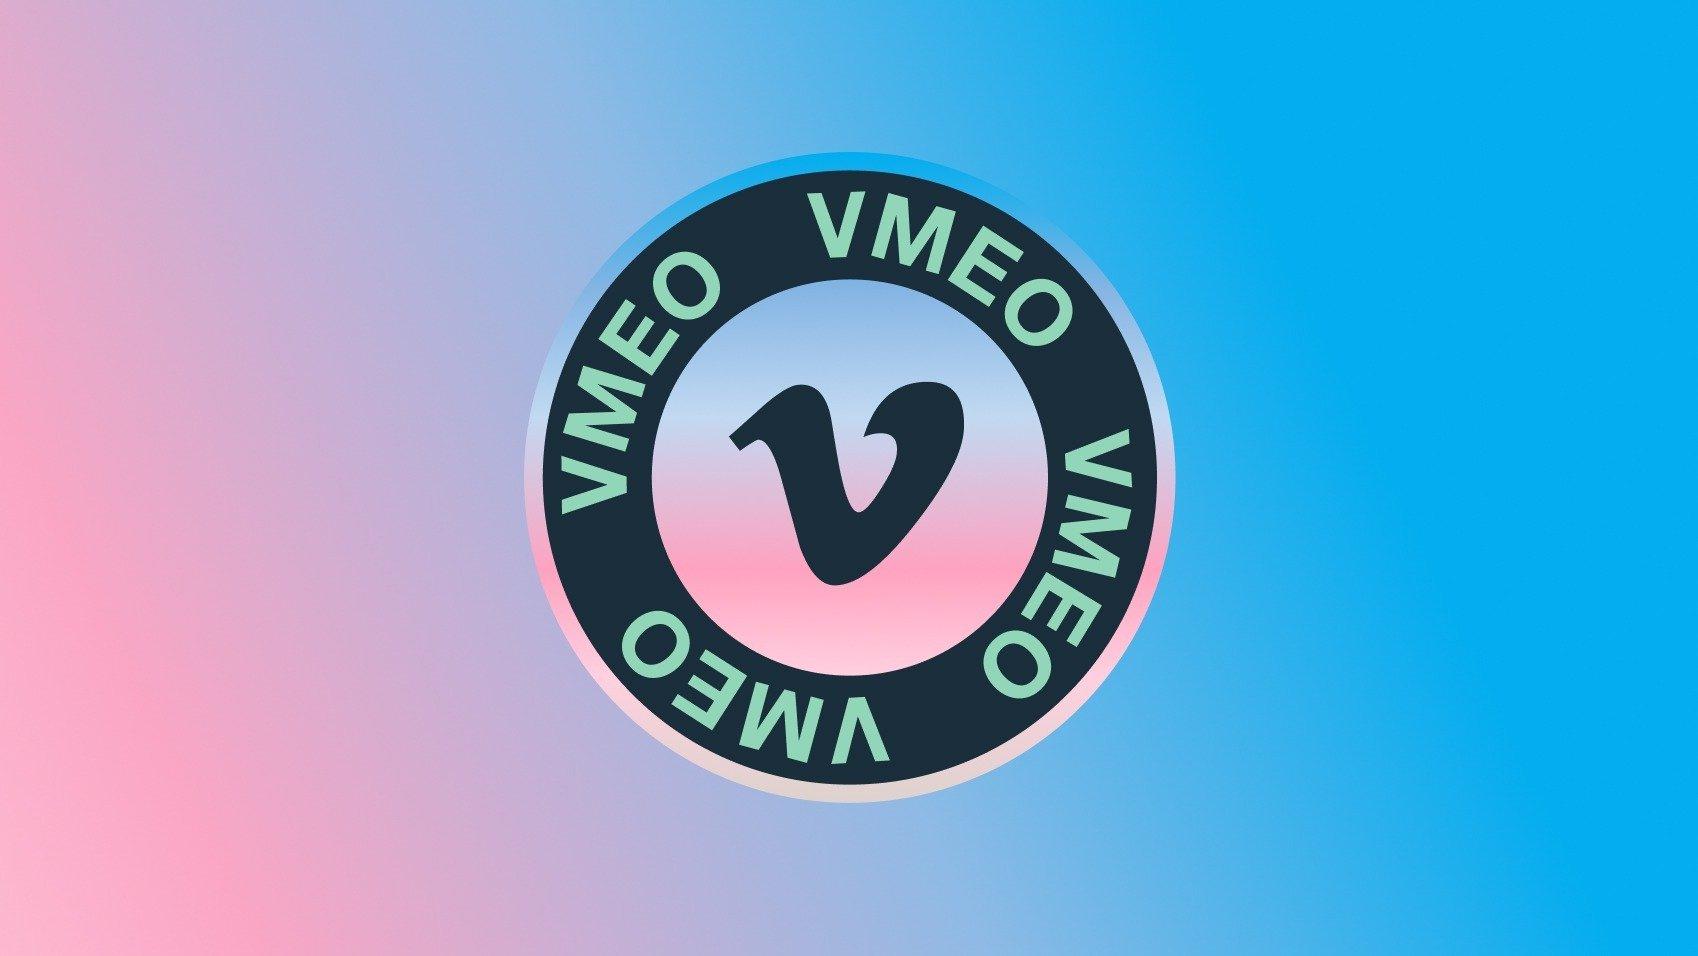 vimeo stock